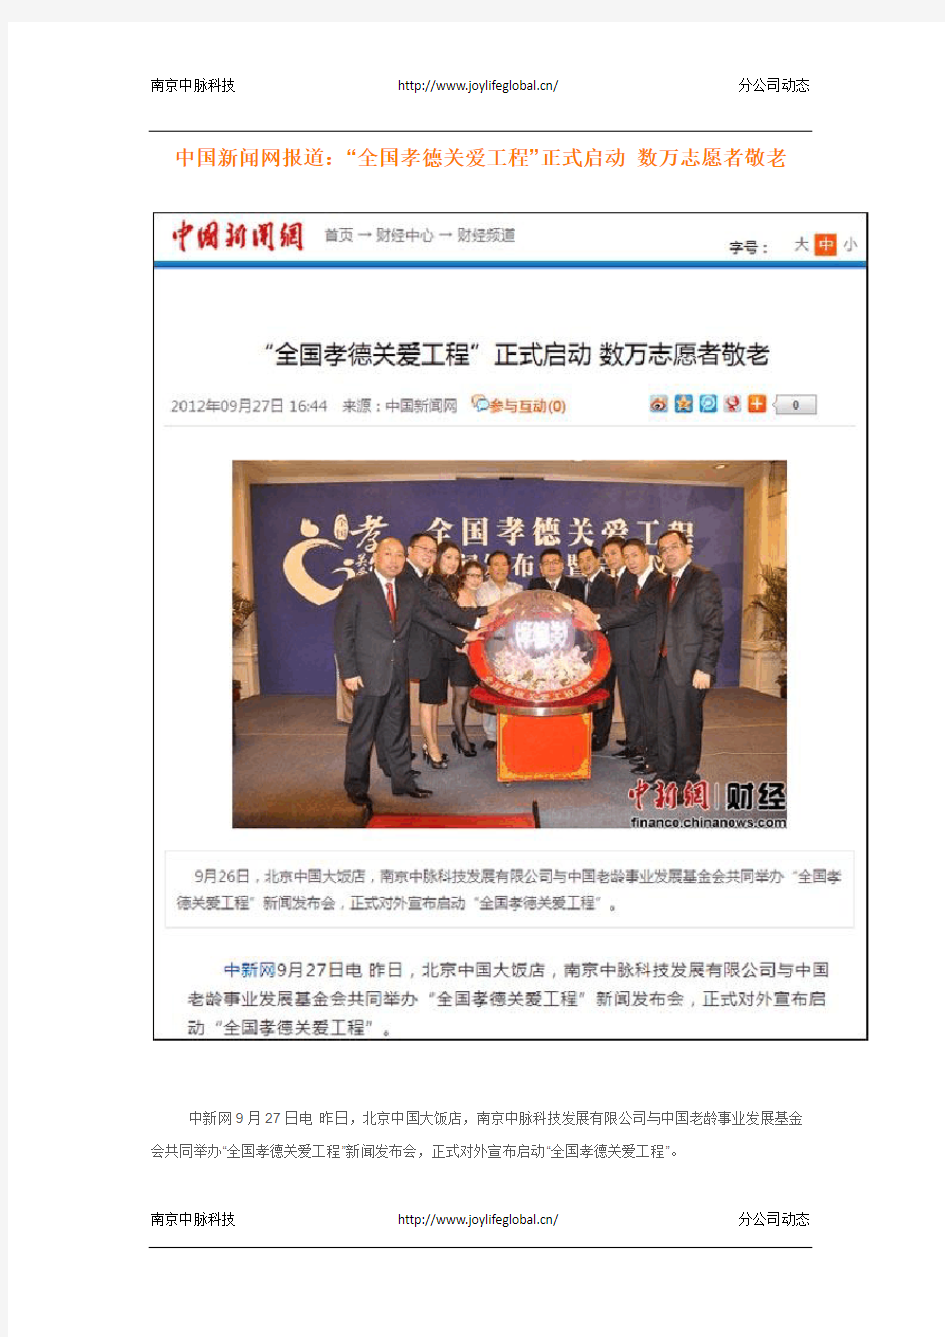 中国新闻网报道：“全国孝德关爱工程”正式启动 数万志愿者敬老